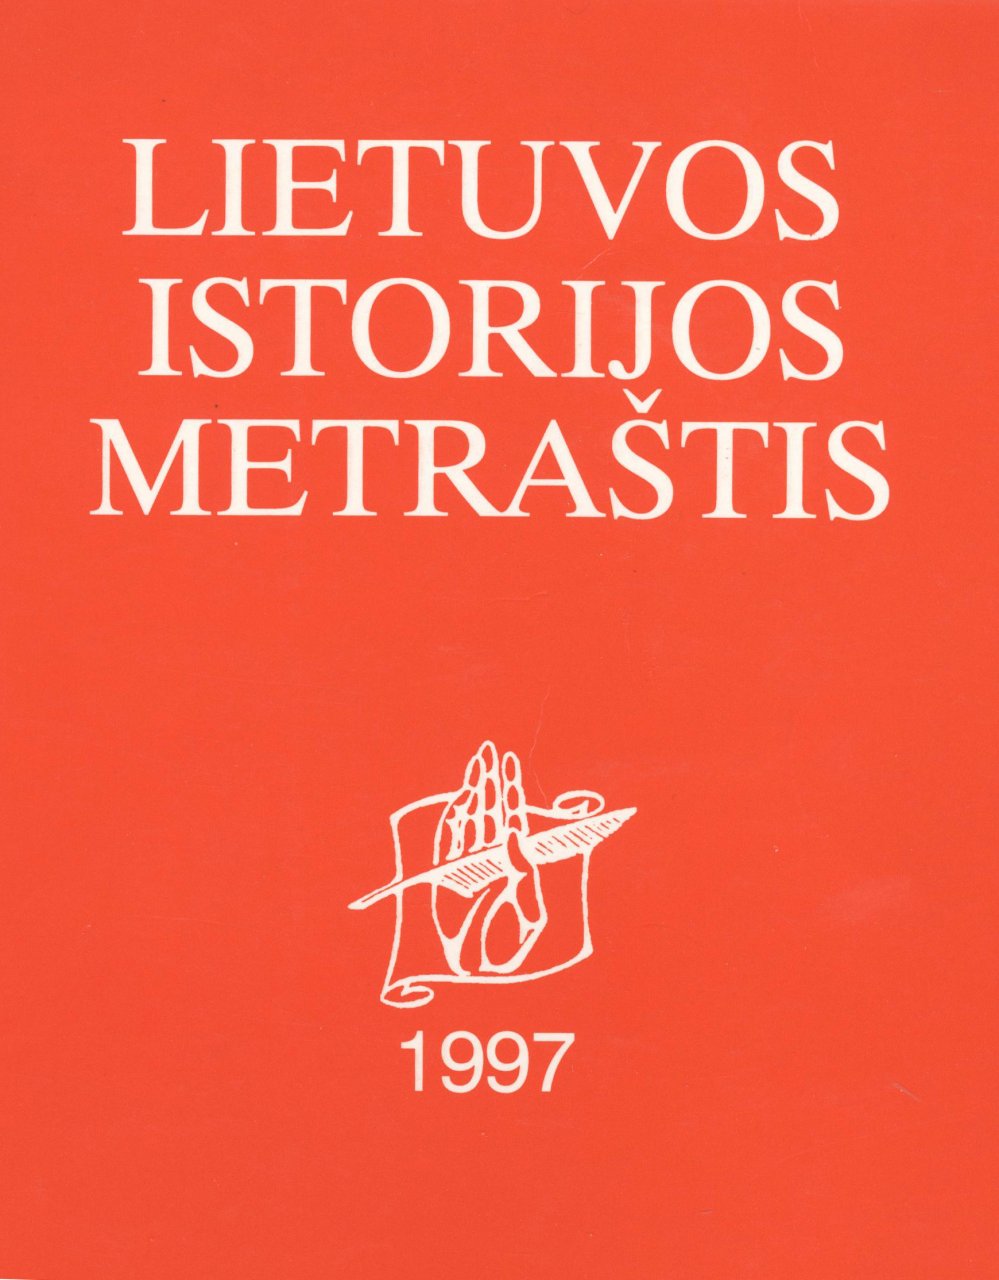 Lietuvos istorijos metraštis 1997 metai 